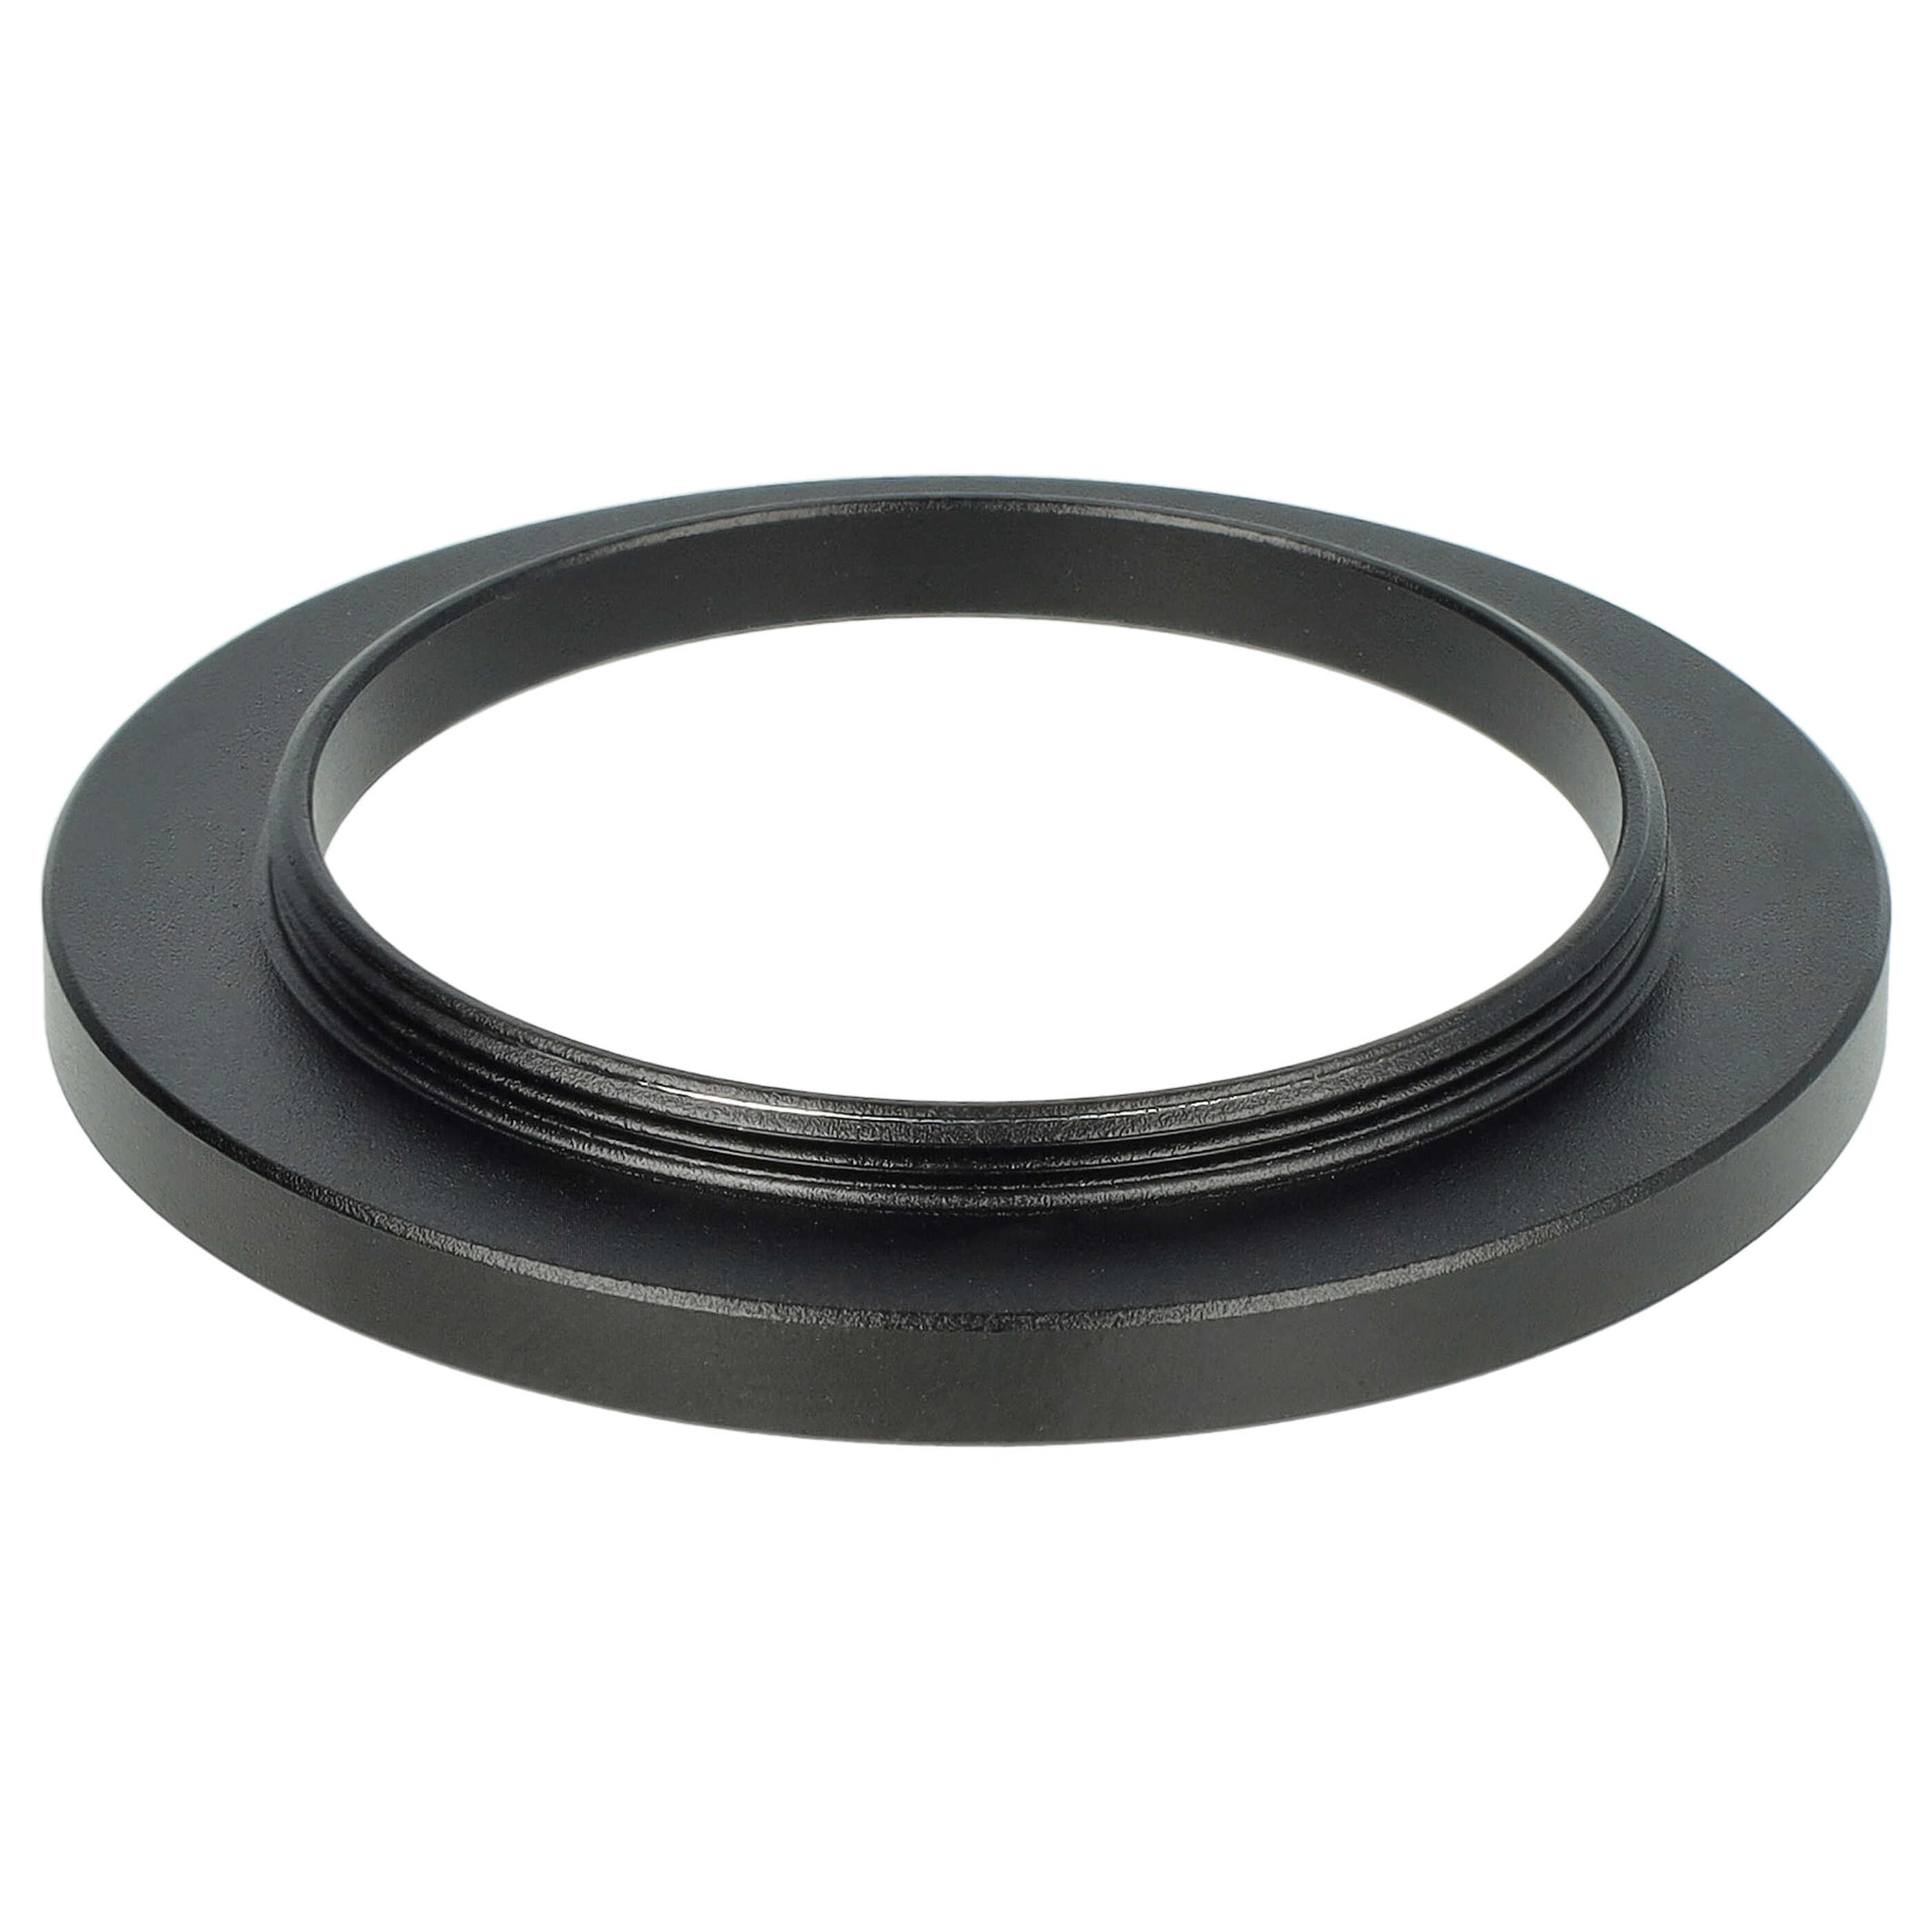 Step-Up-Ring Adapter 37 mm auf 46 mm passend für diverse Kamera-Objektive - Filteradapter